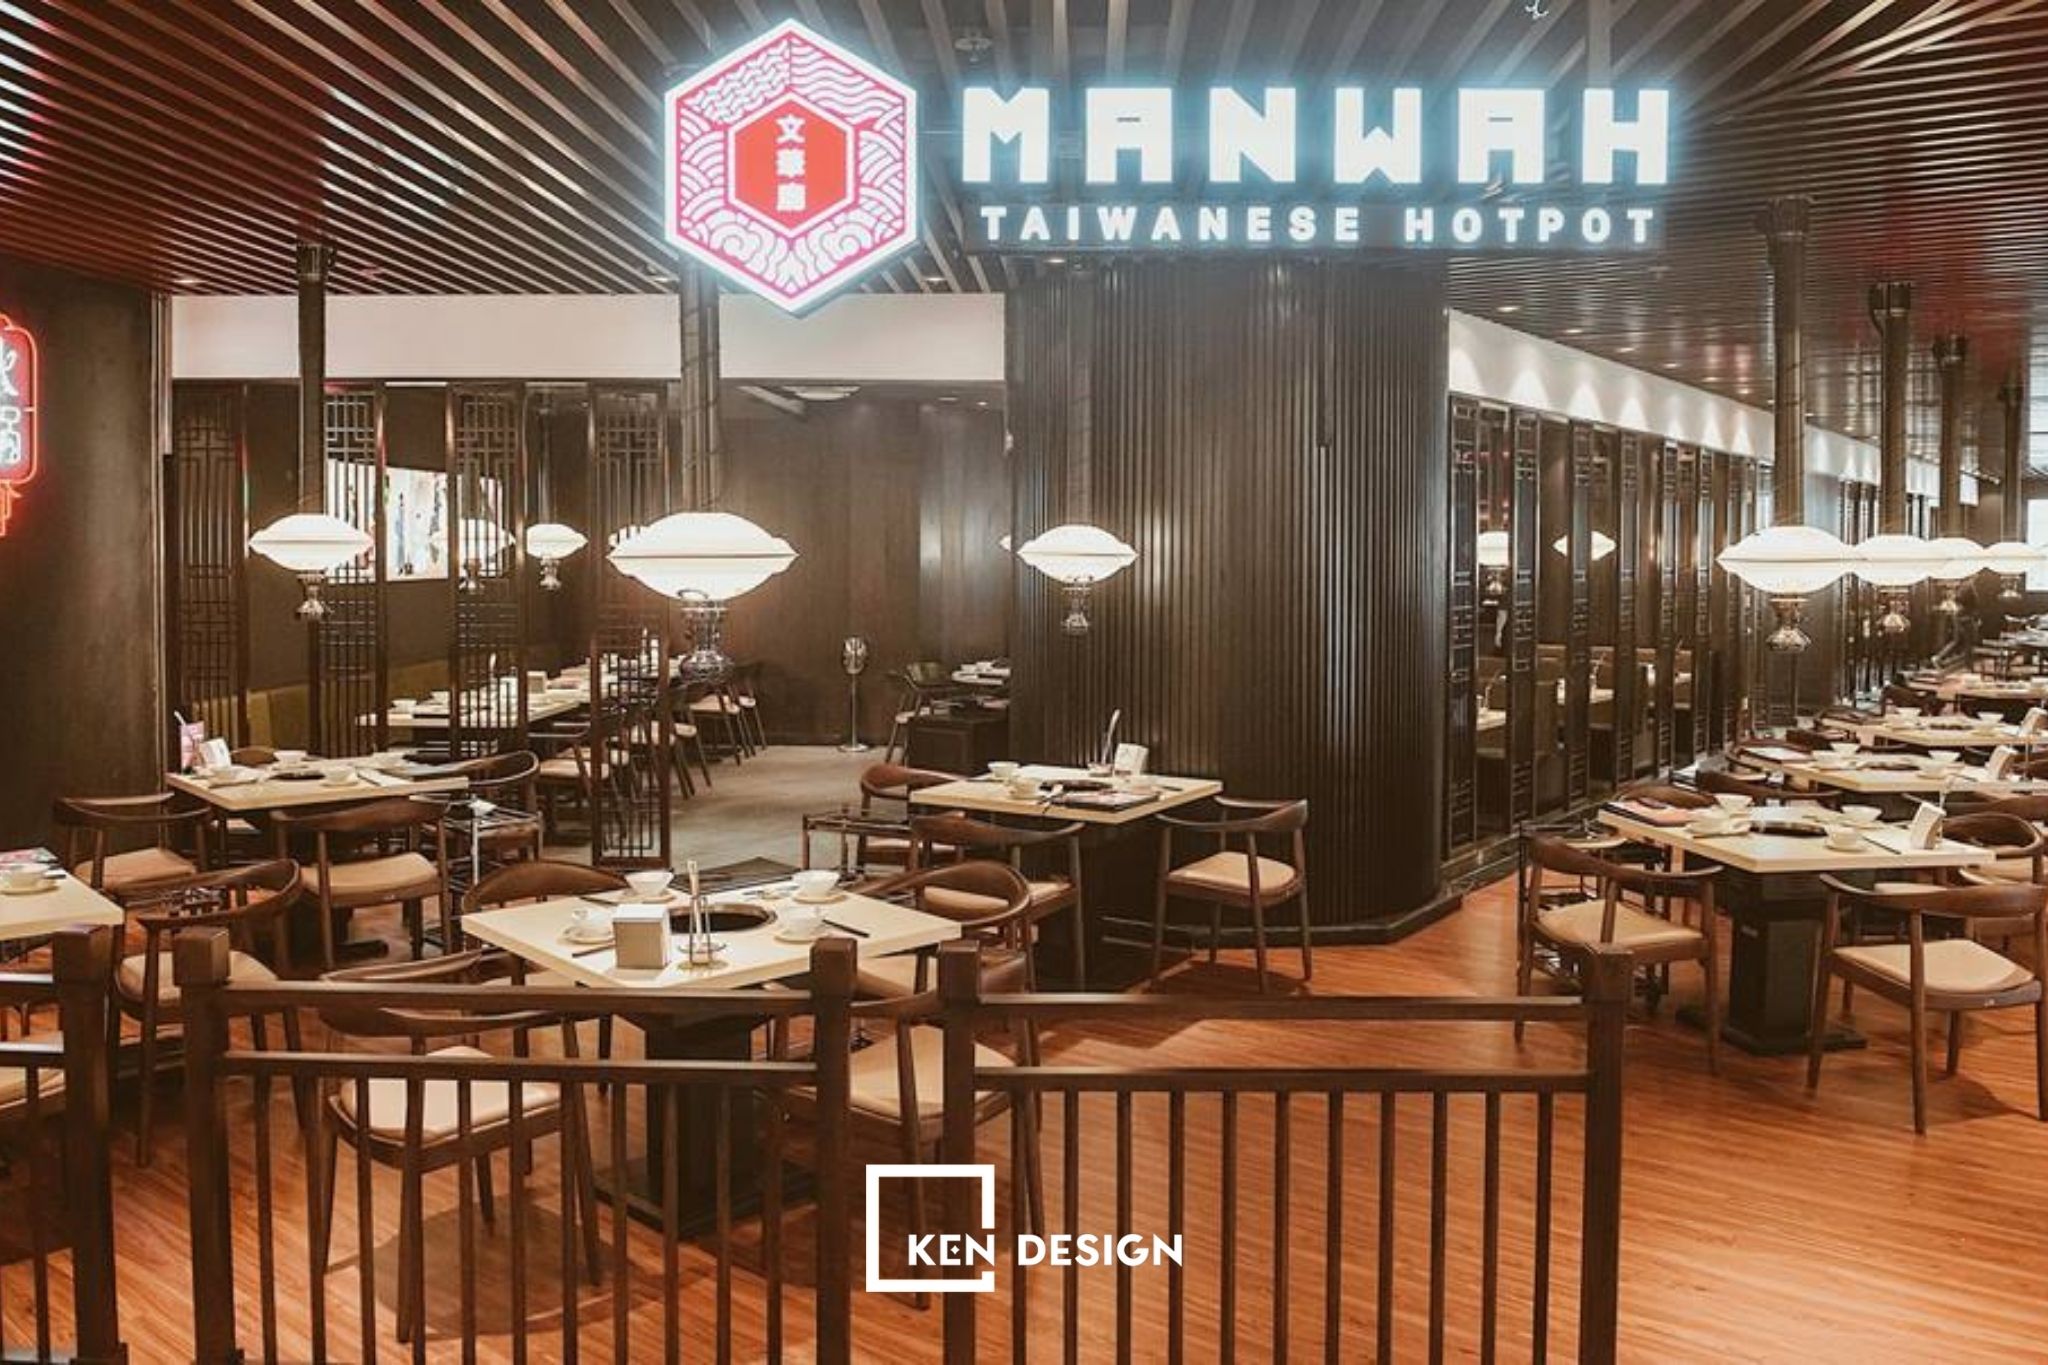 thiết kế nhà hàng Manwah